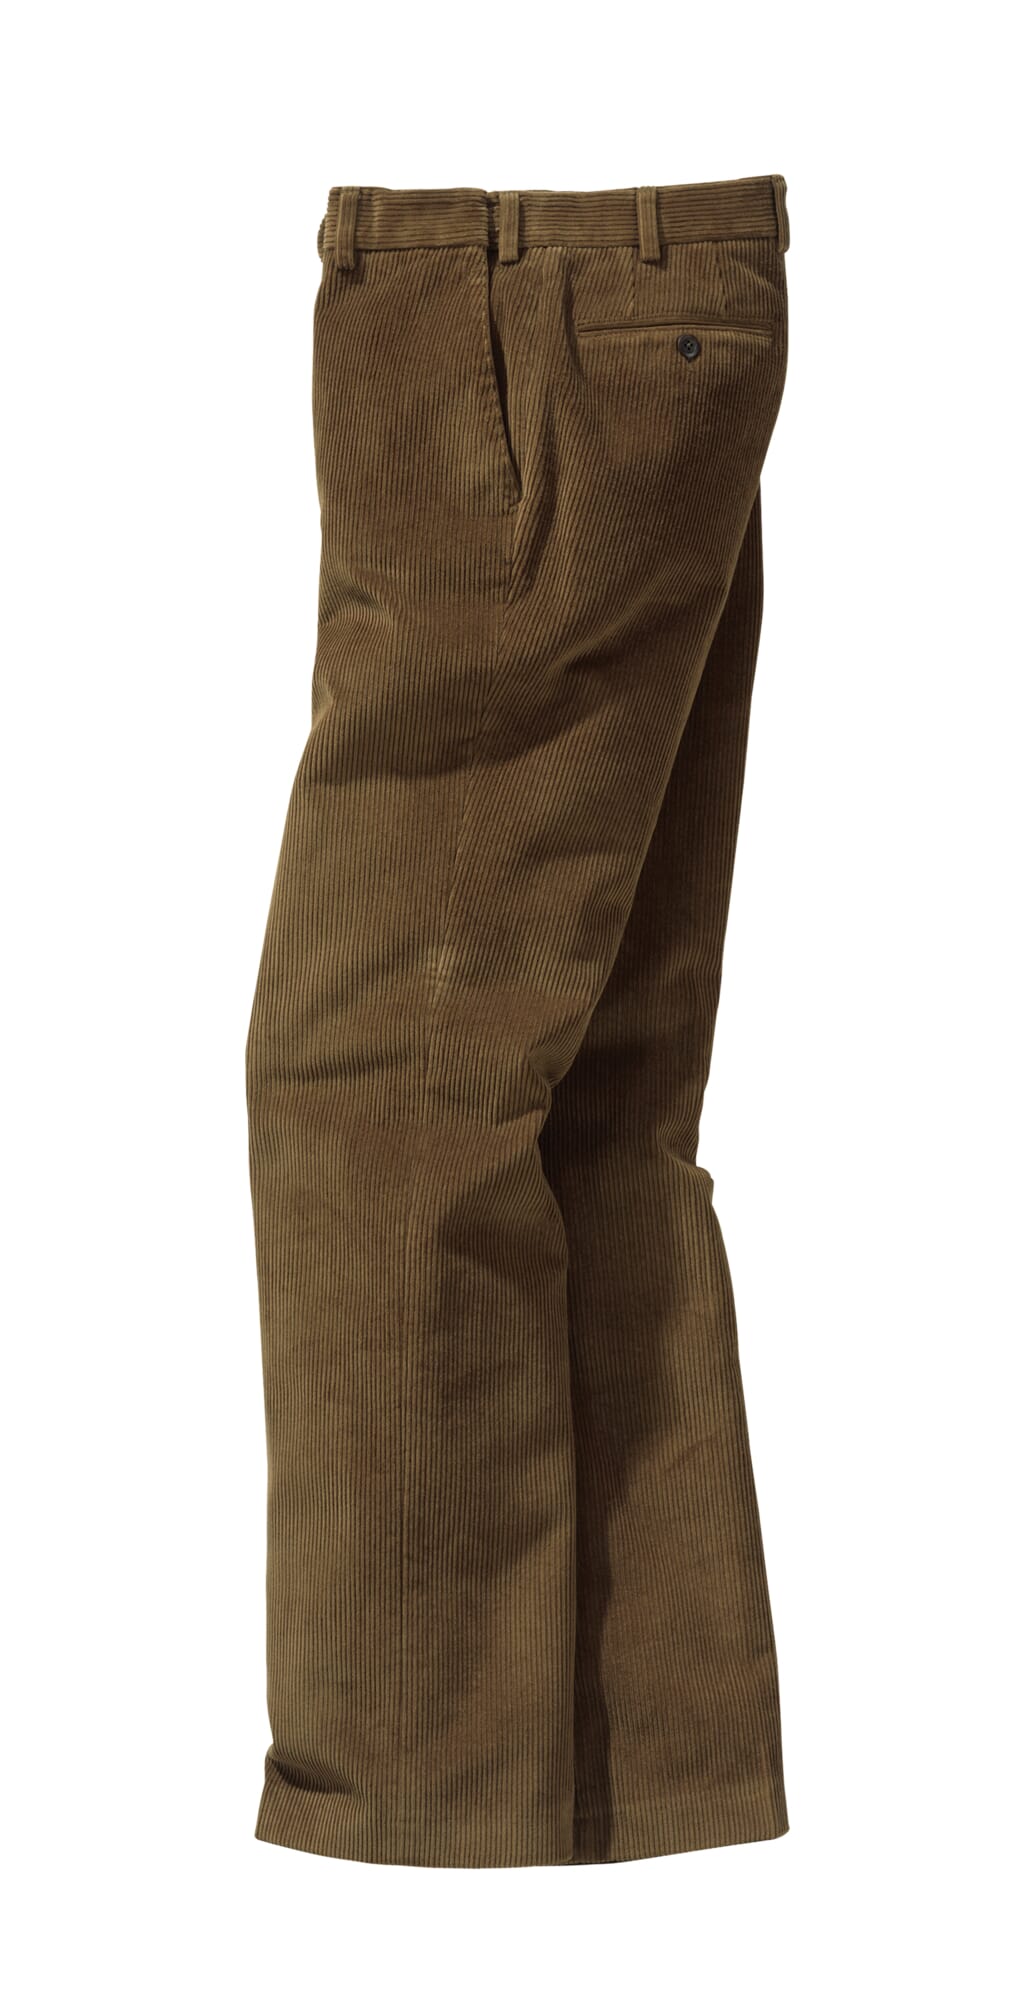 Fonz Ferroni Corduroy Pants Purple Stretch Fabric Modl #JFW-9801 Straight Sz 36 